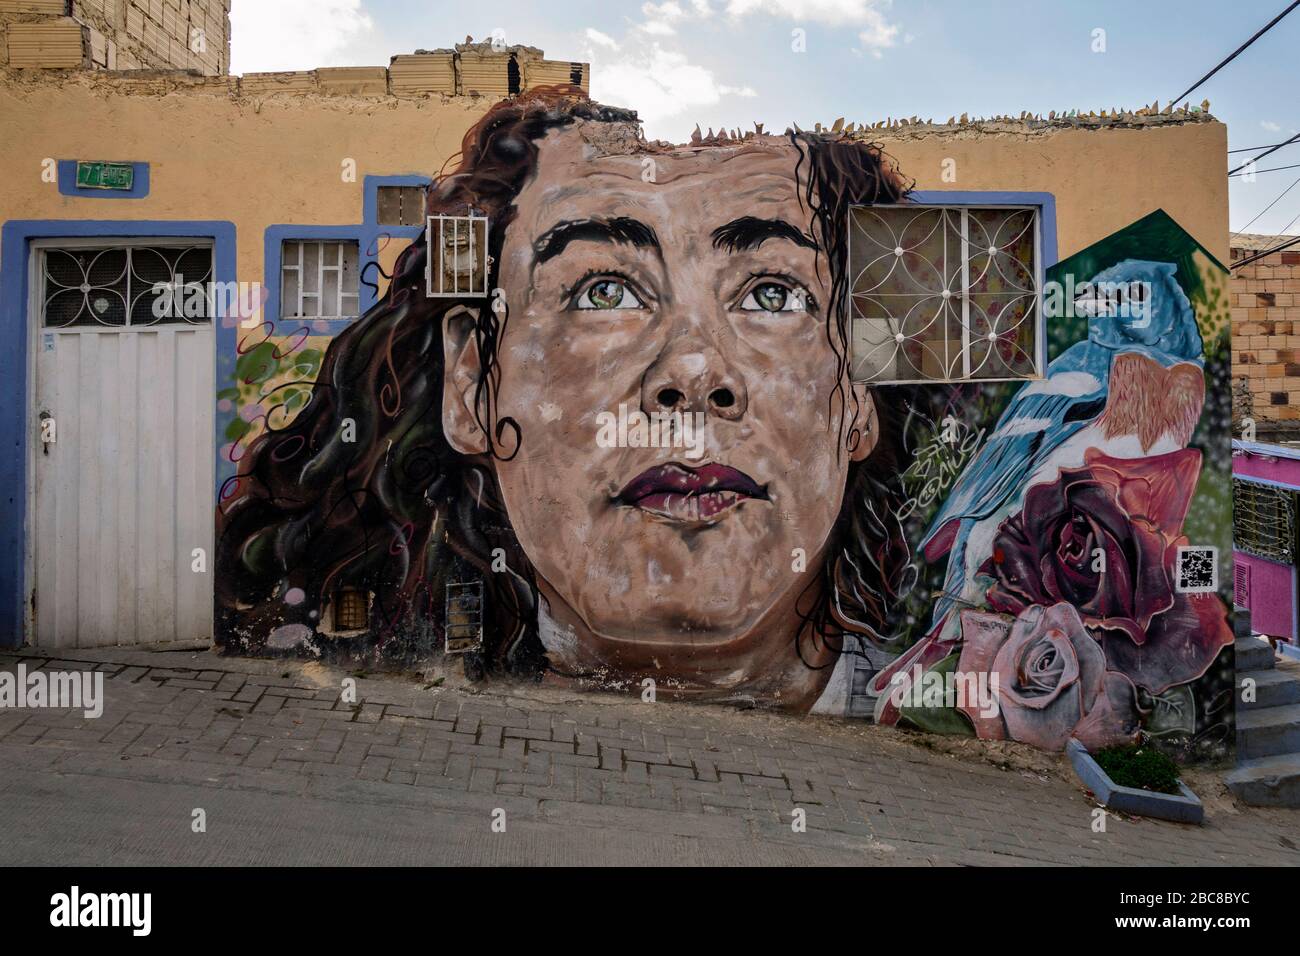 BOGOTÀ, COLOMBIA - 03 gennaio 2020: Muro coperto da graffiti nella Candelaria di Bogotà, capitale della Colombia. Foto Stock